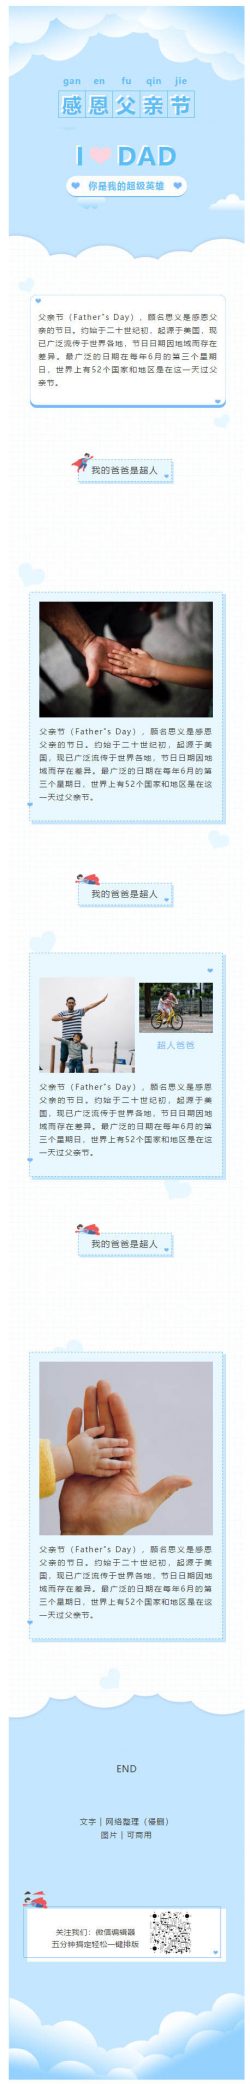 父亲节Father”s Day微信图文模板微信推送图文模板推文